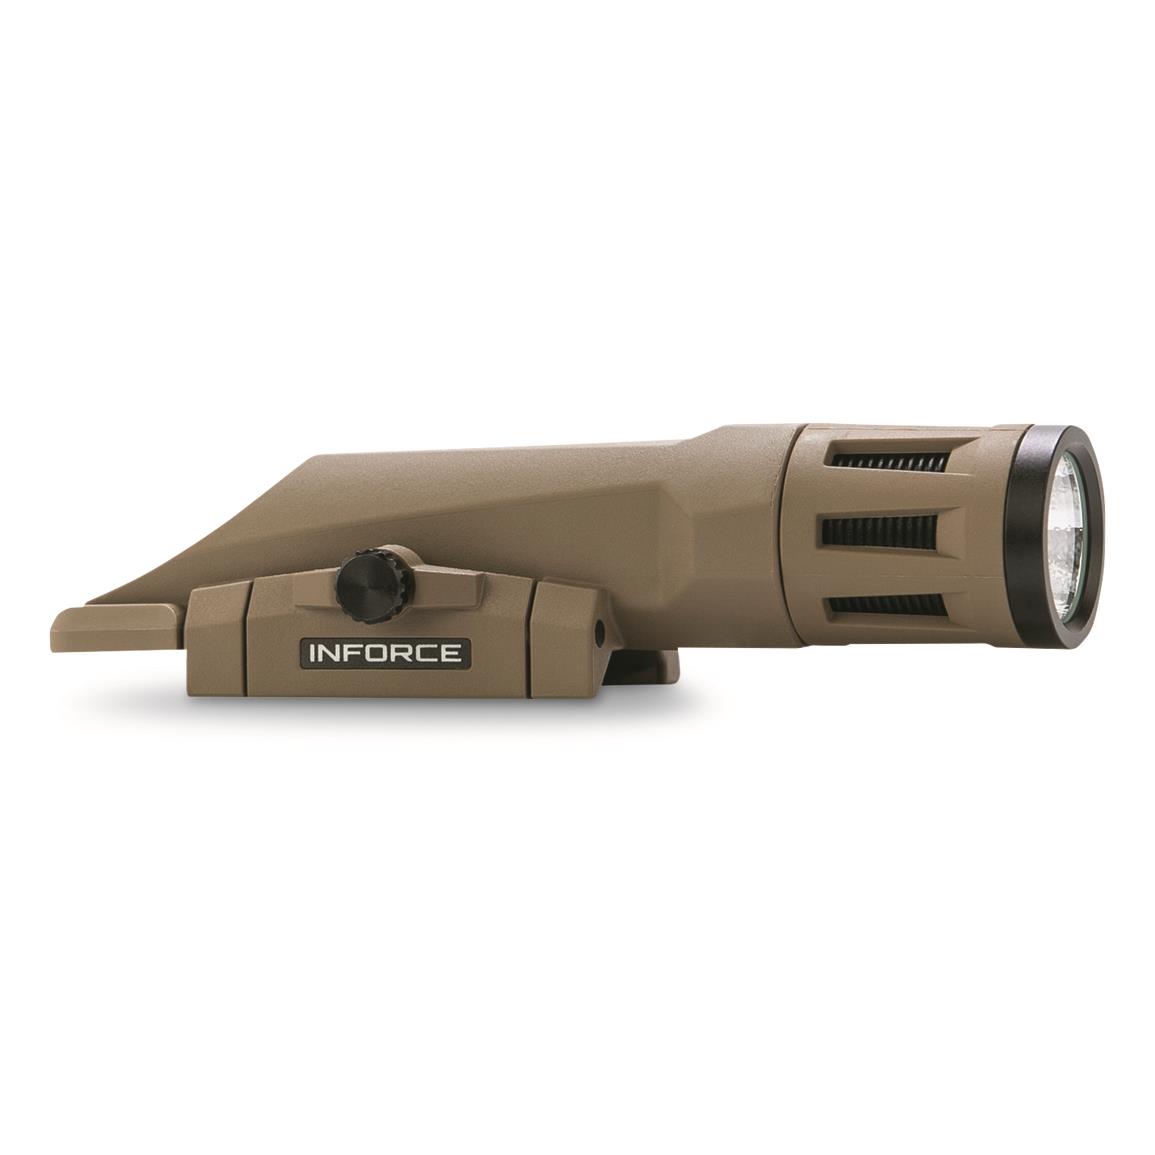 Inforce WMLx Gen2 700-lumen Rifle Light with IR, FDE